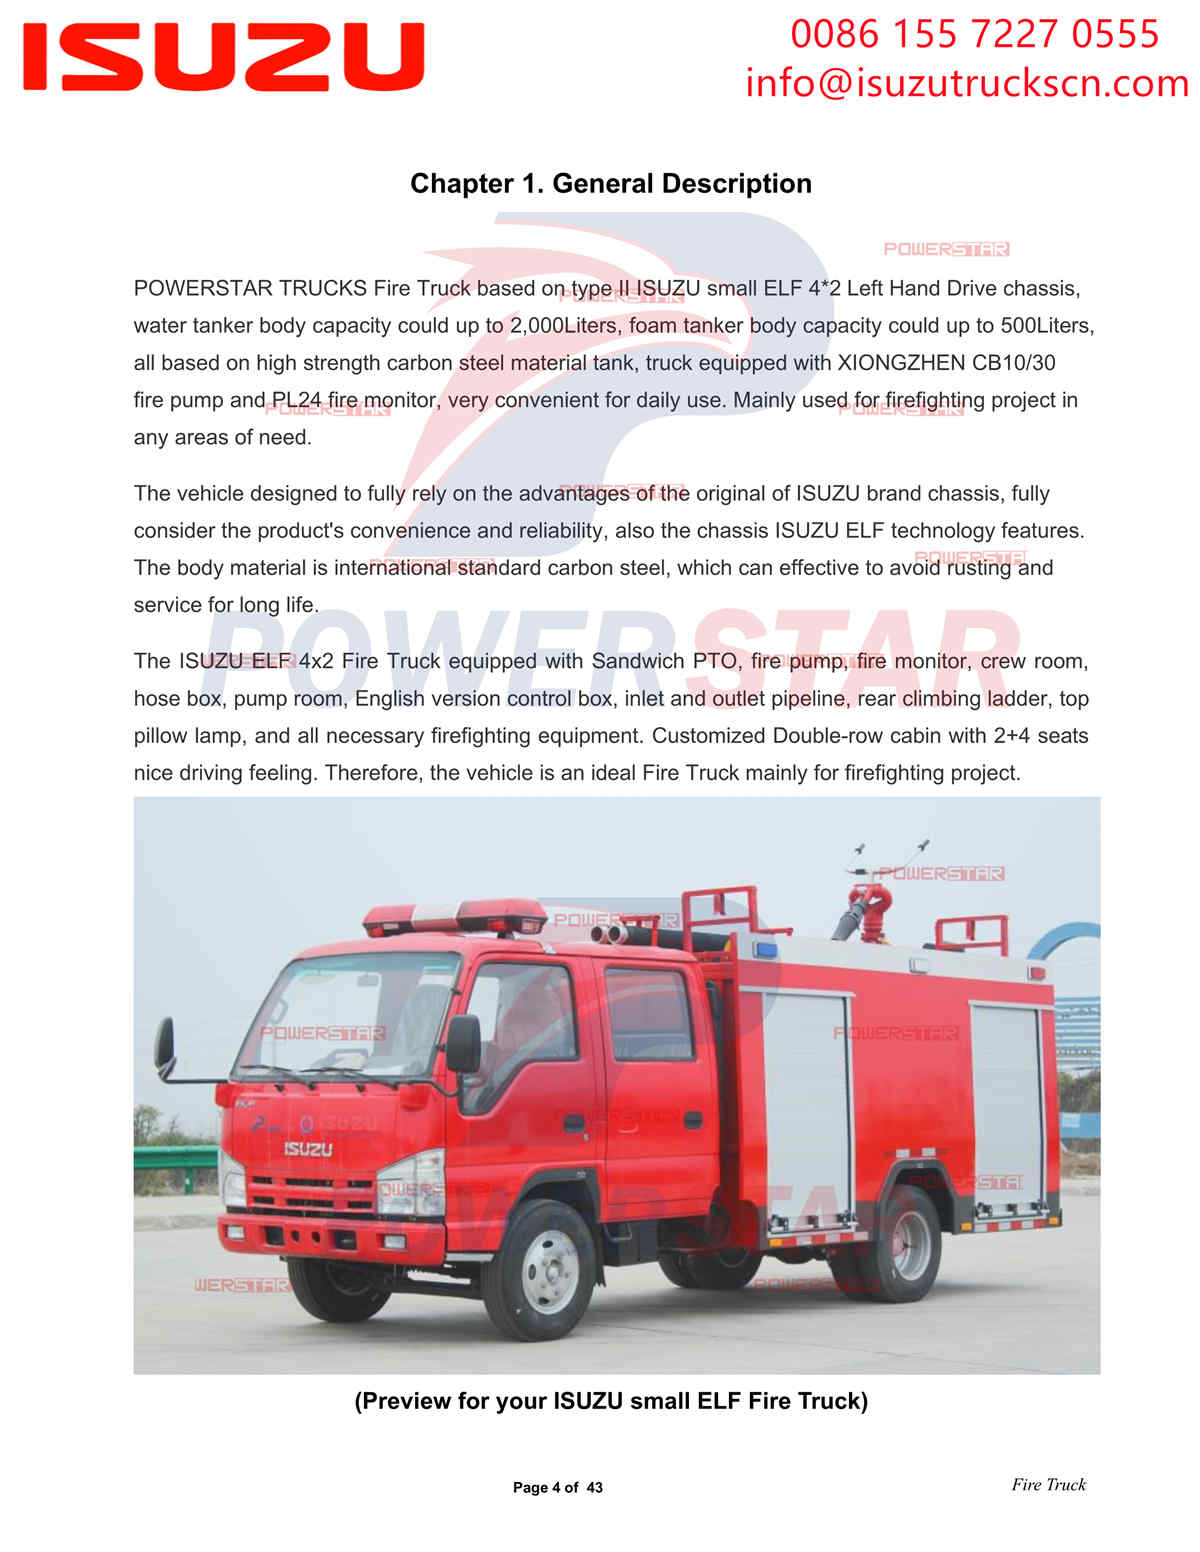 POWERSTAR ISUZU 100P Пожарная машина с водой и пеной экспорт Албания